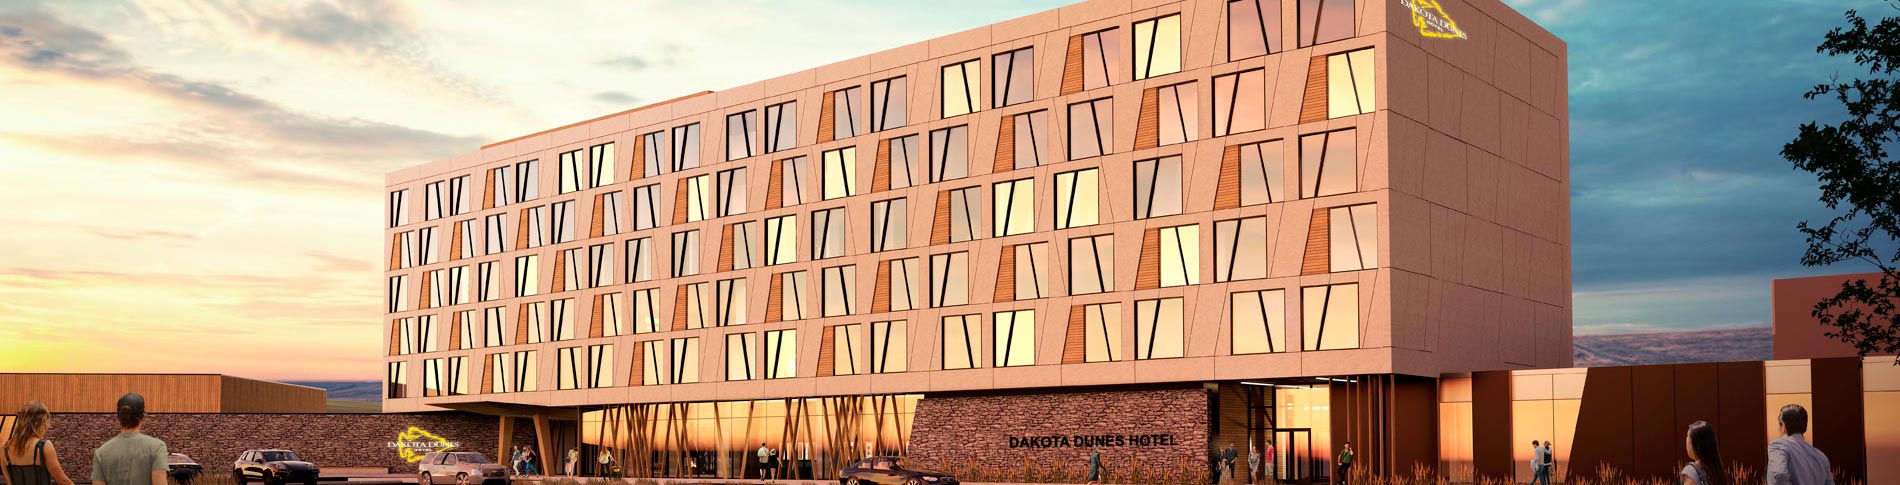 Dakota Dunes Resort & Casino